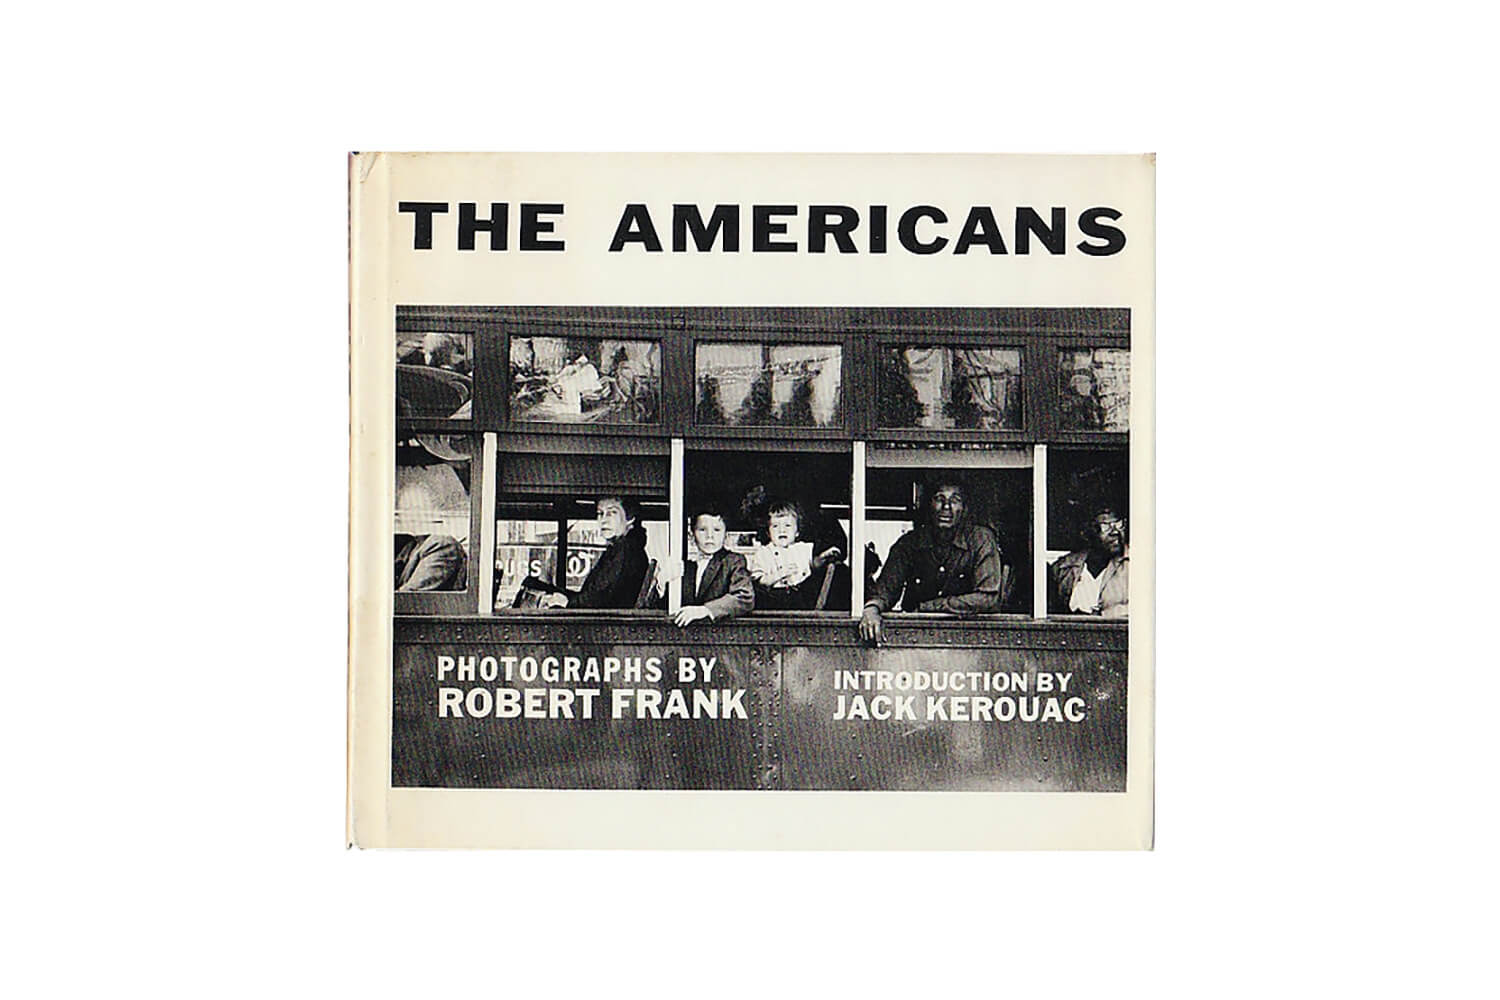 ロバート・フランク 写真集『THE AMERICANS』表紙